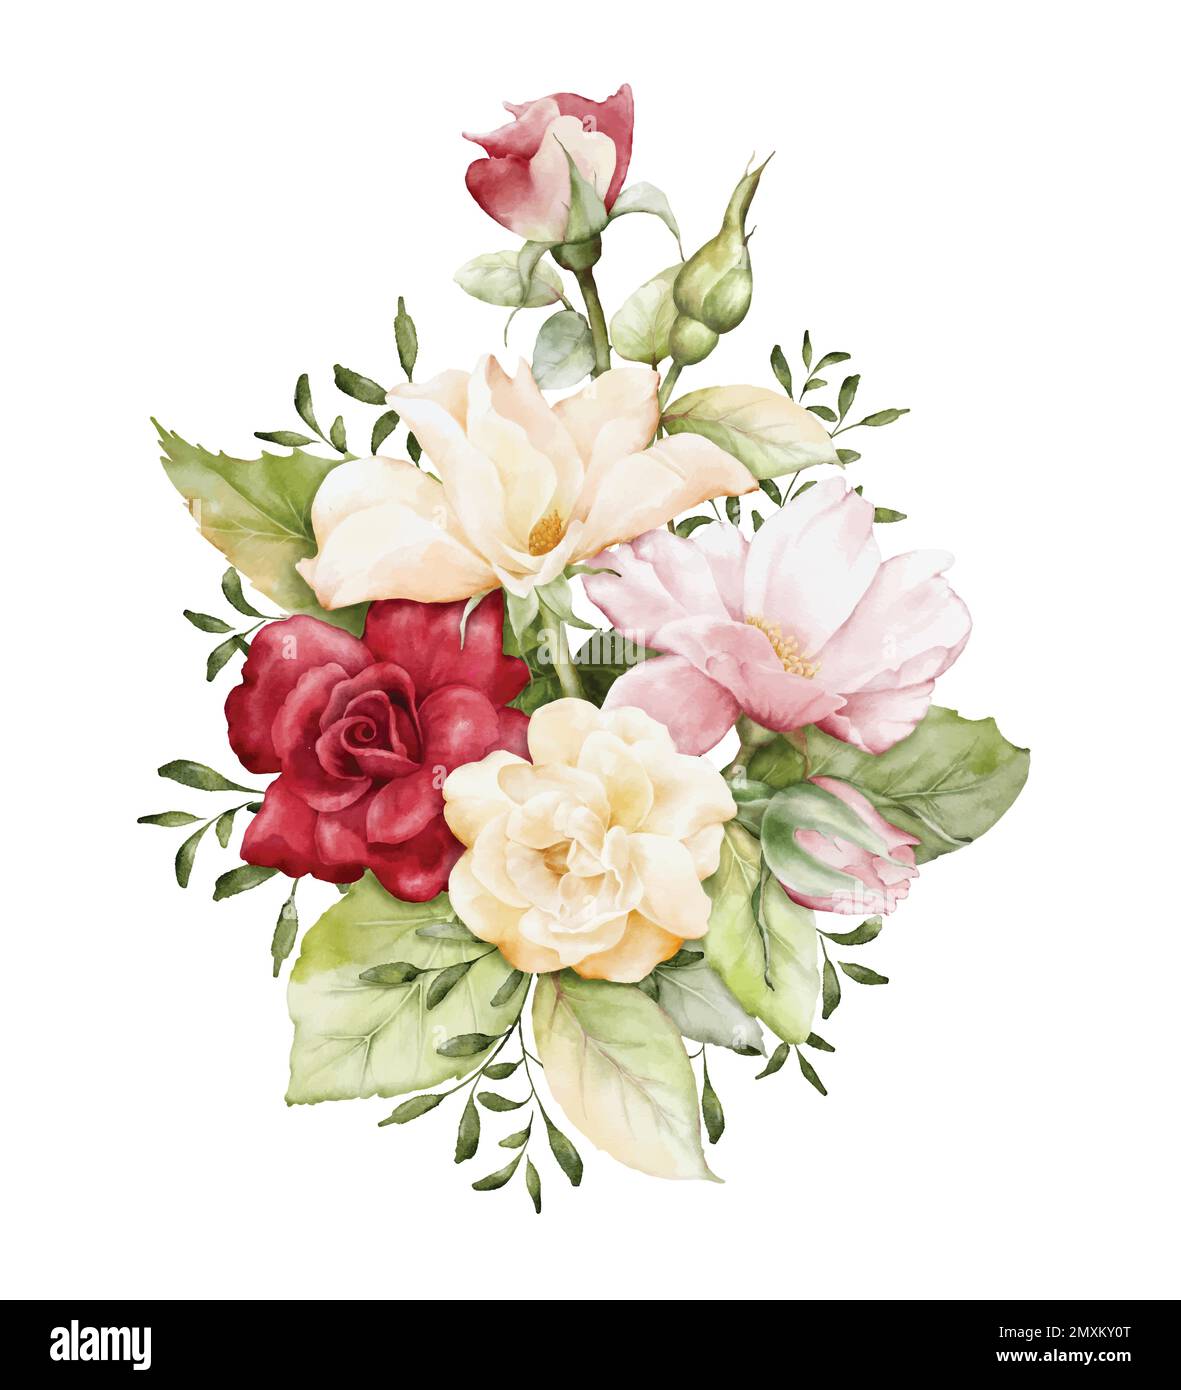 Aquarelle Arrangements mit Rosenblumen. Rosafarbene, rote und gelbe Rosensträuße, die eine Komposition für Hochzeiten-, Valentinskarten oder Grußkarten hinterlassen. Botani Stock Vektor